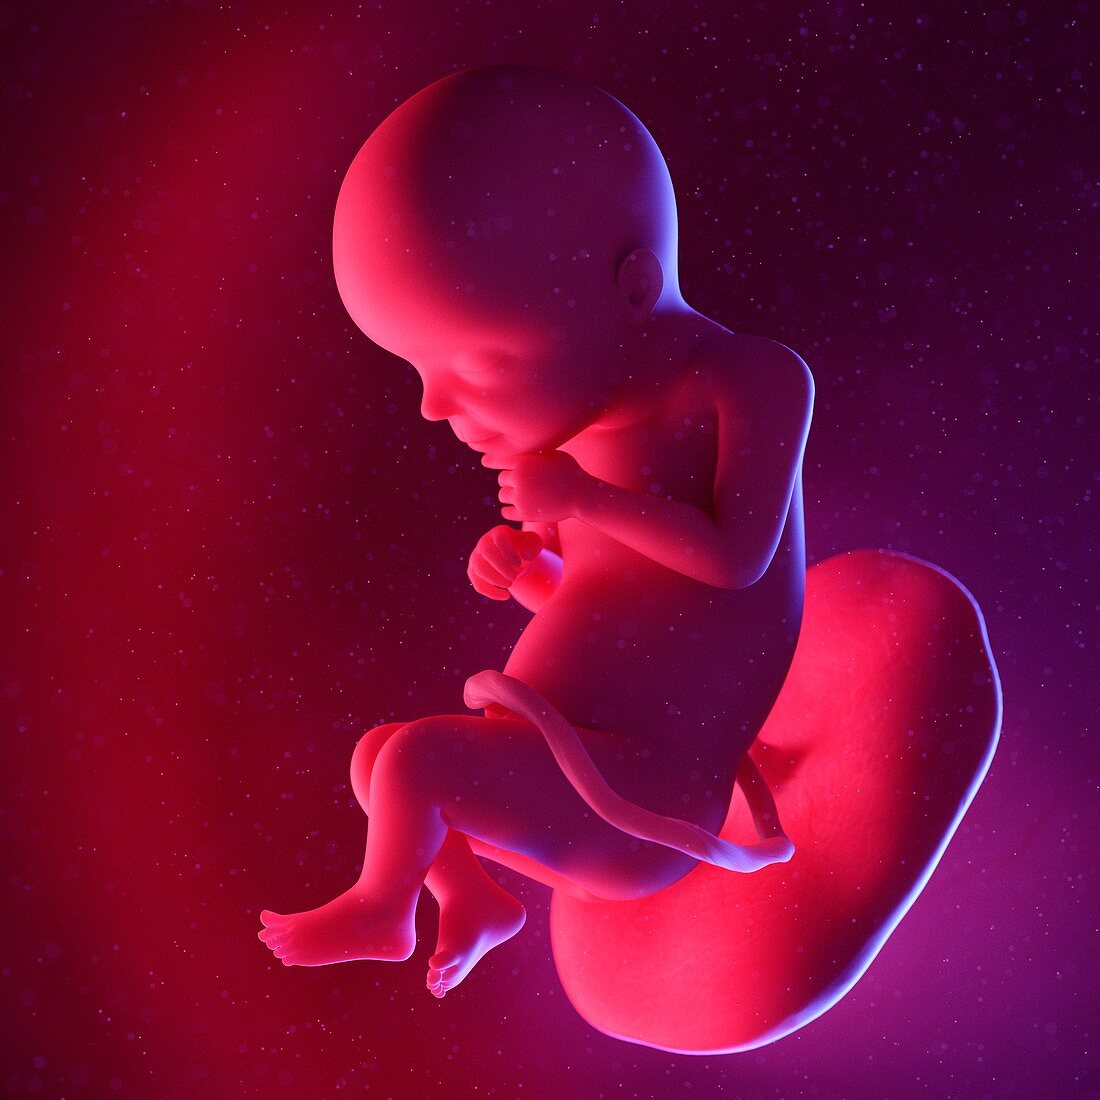 Fetus at week 28, illustration